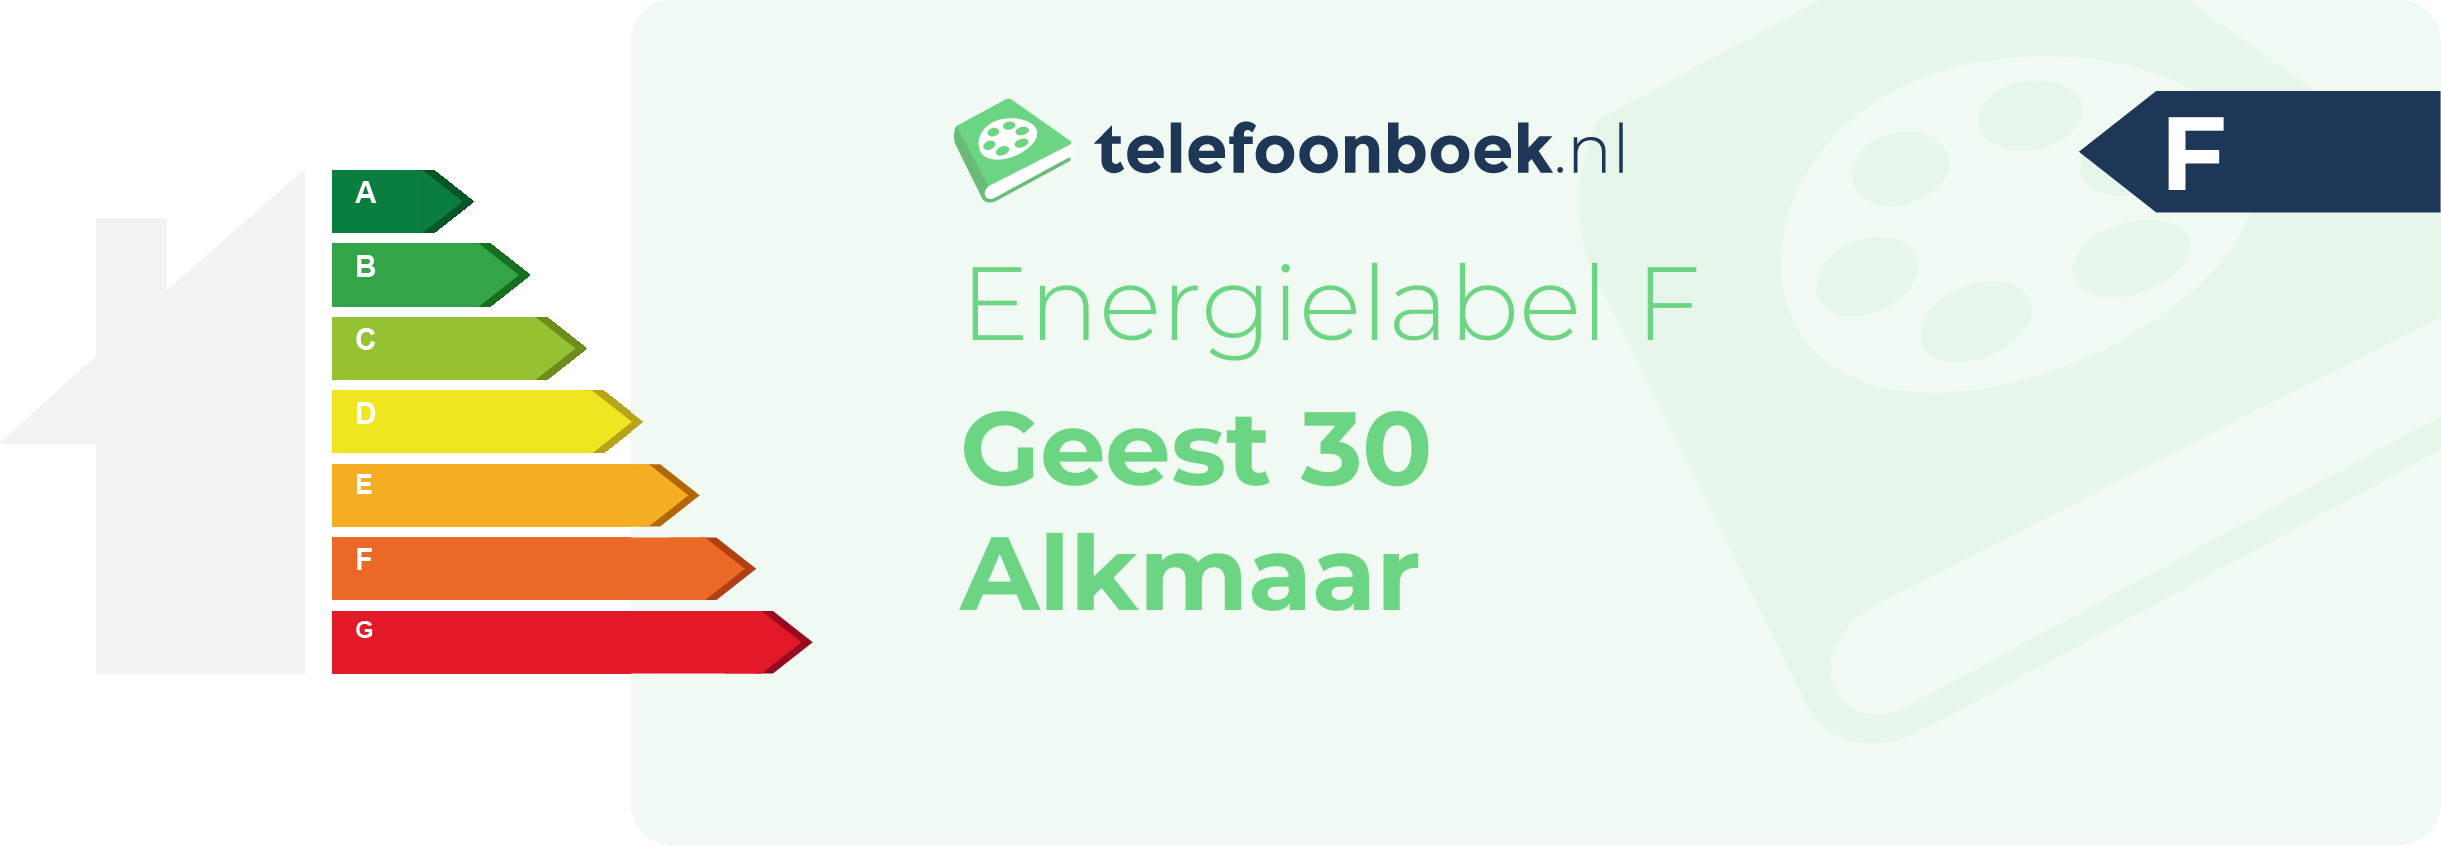 Energielabel Geest 30 Alkmaar